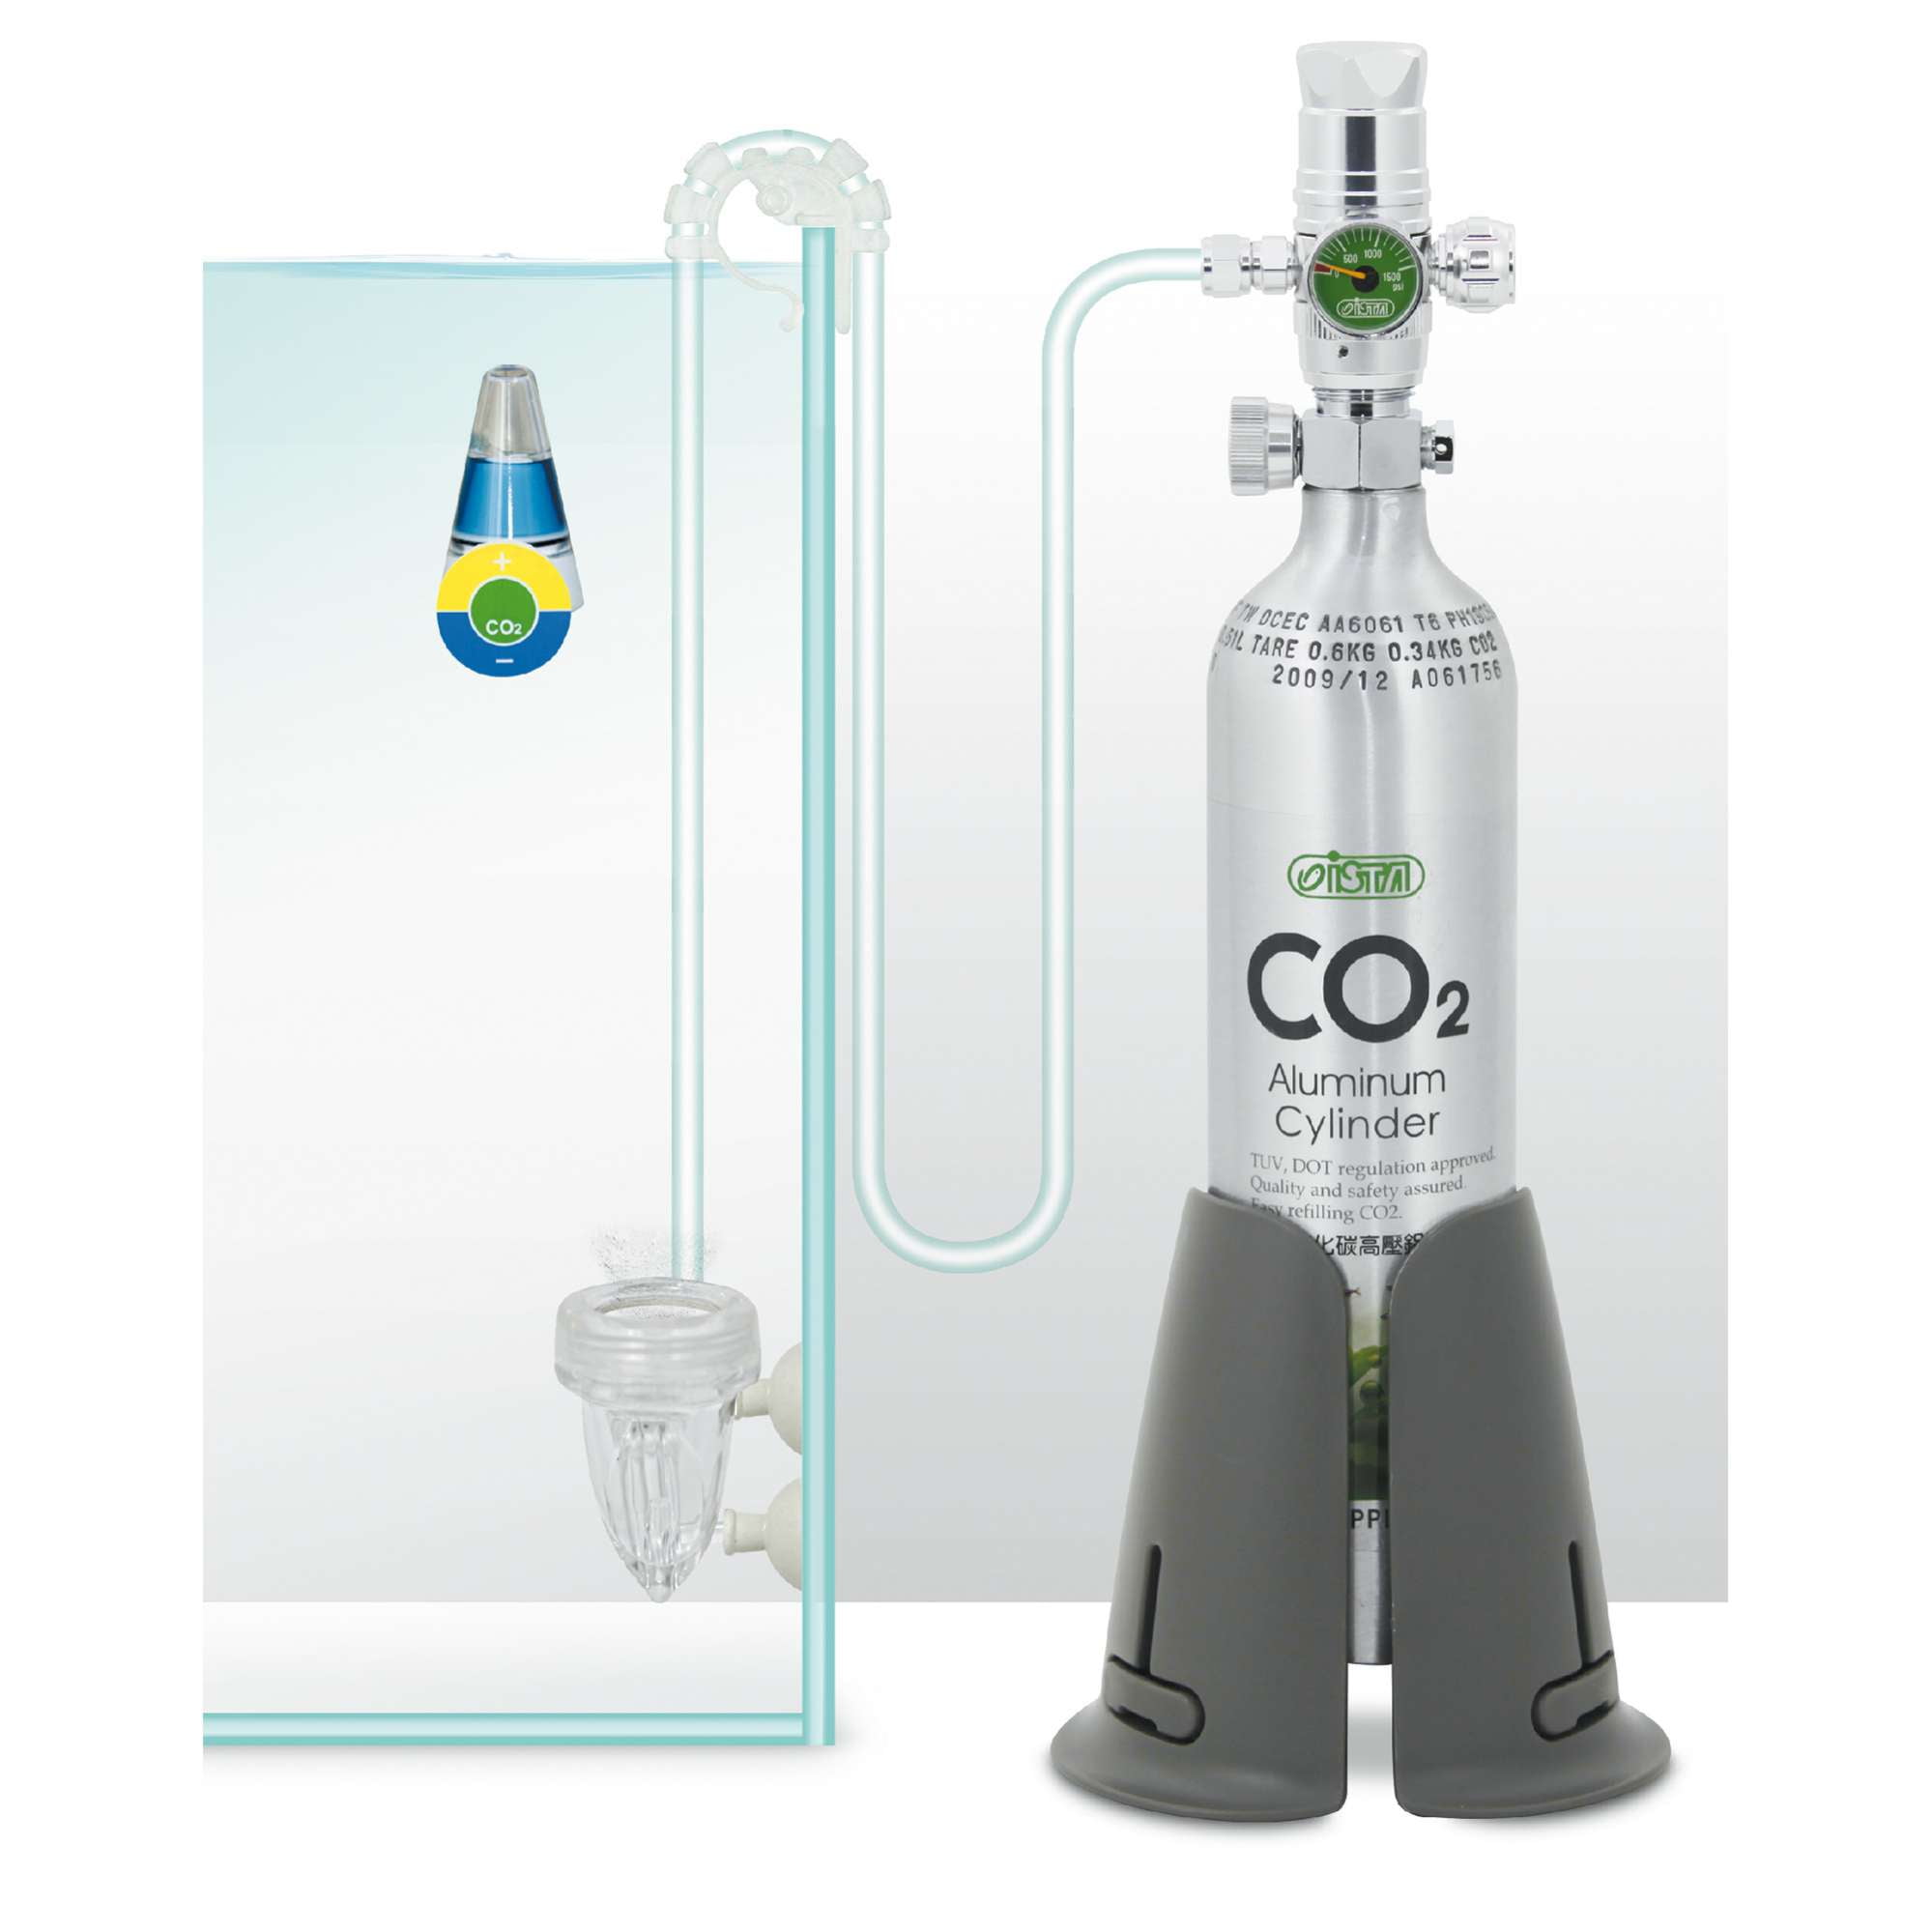 Botella cilindro de CO2 desechable 600 gr.